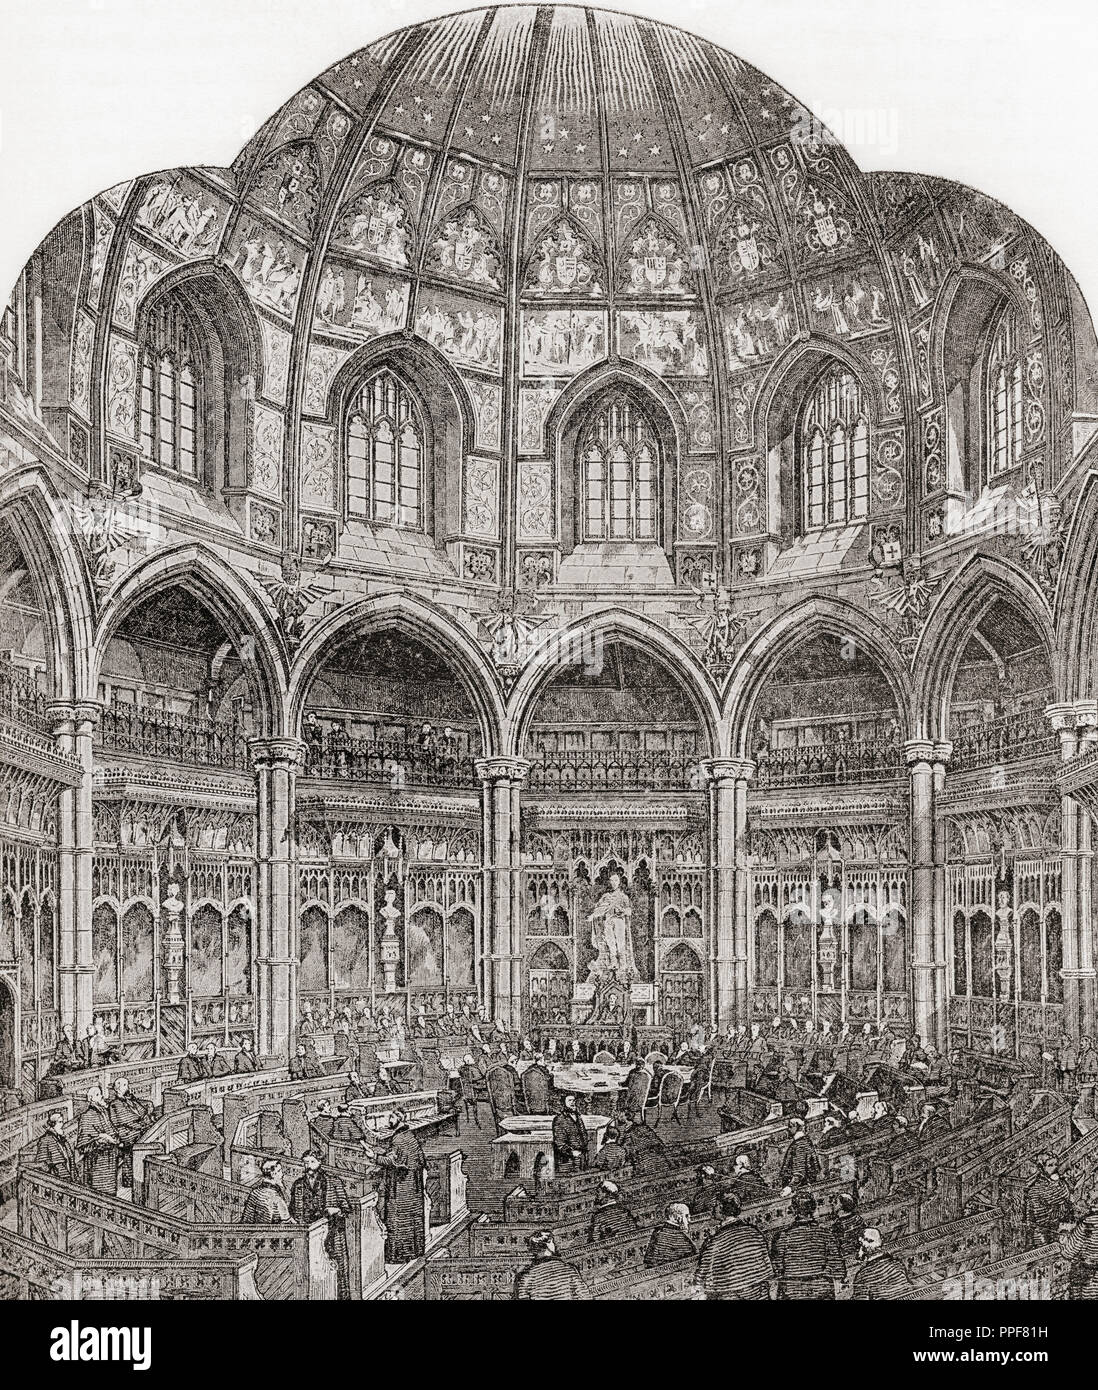 Die neue Gemeinsame Ratssaal, Rathaus, London, England im 19. Jahrhundert. Von London Bilder, veröffentlicht 1890. Stockfoto